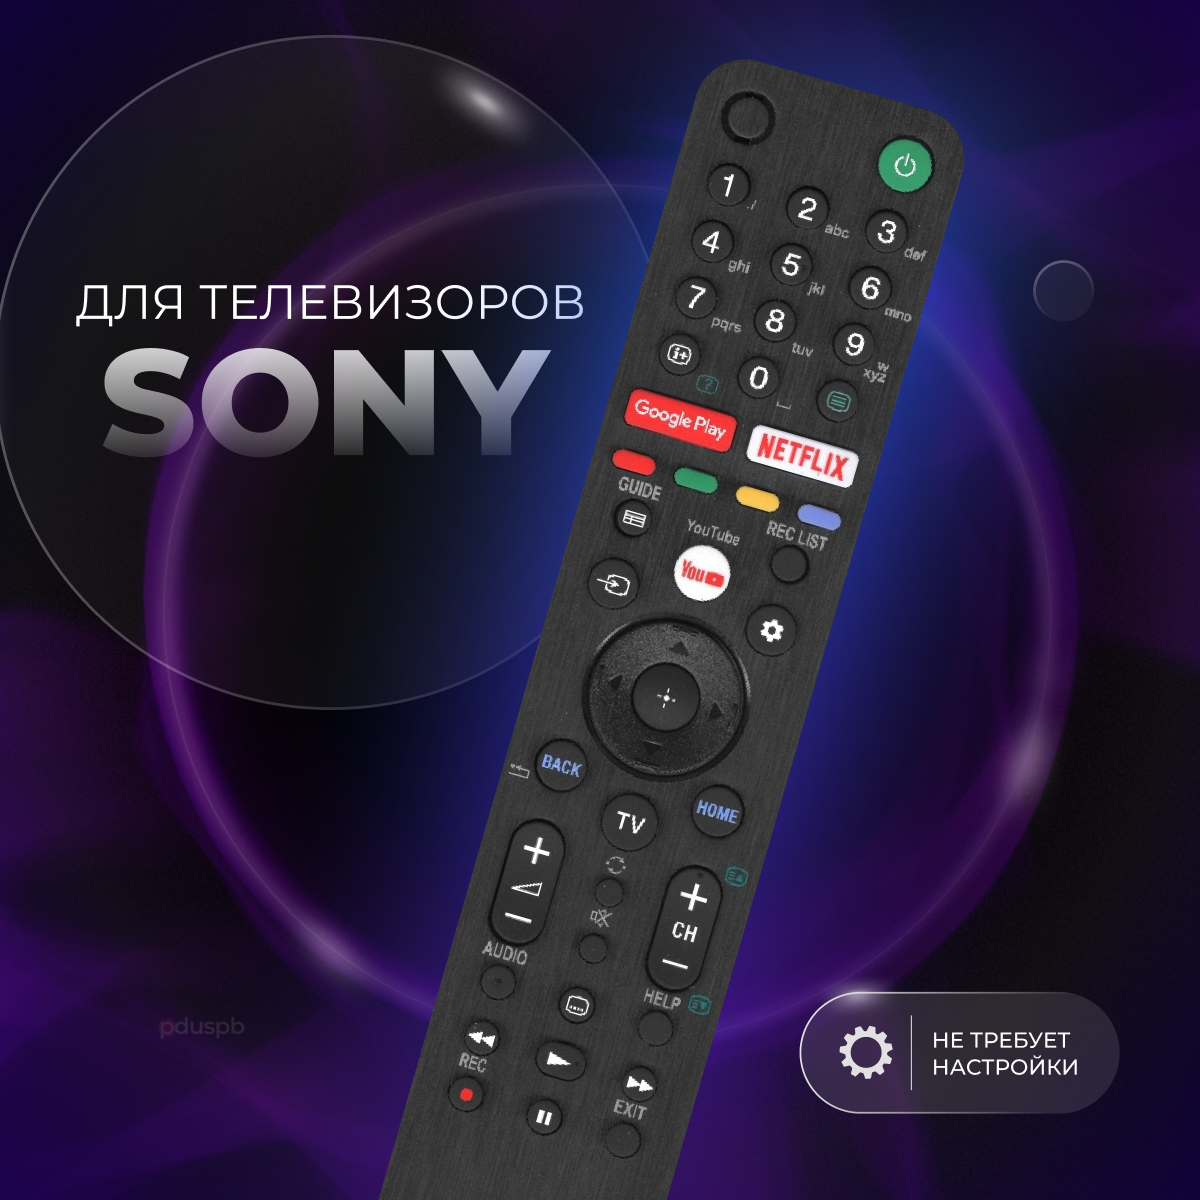 Универсальный пульт ду для телевизора Sony Smart Tv / RM-L1675 / Смарт Тв Netflix, YouTube, Google Play